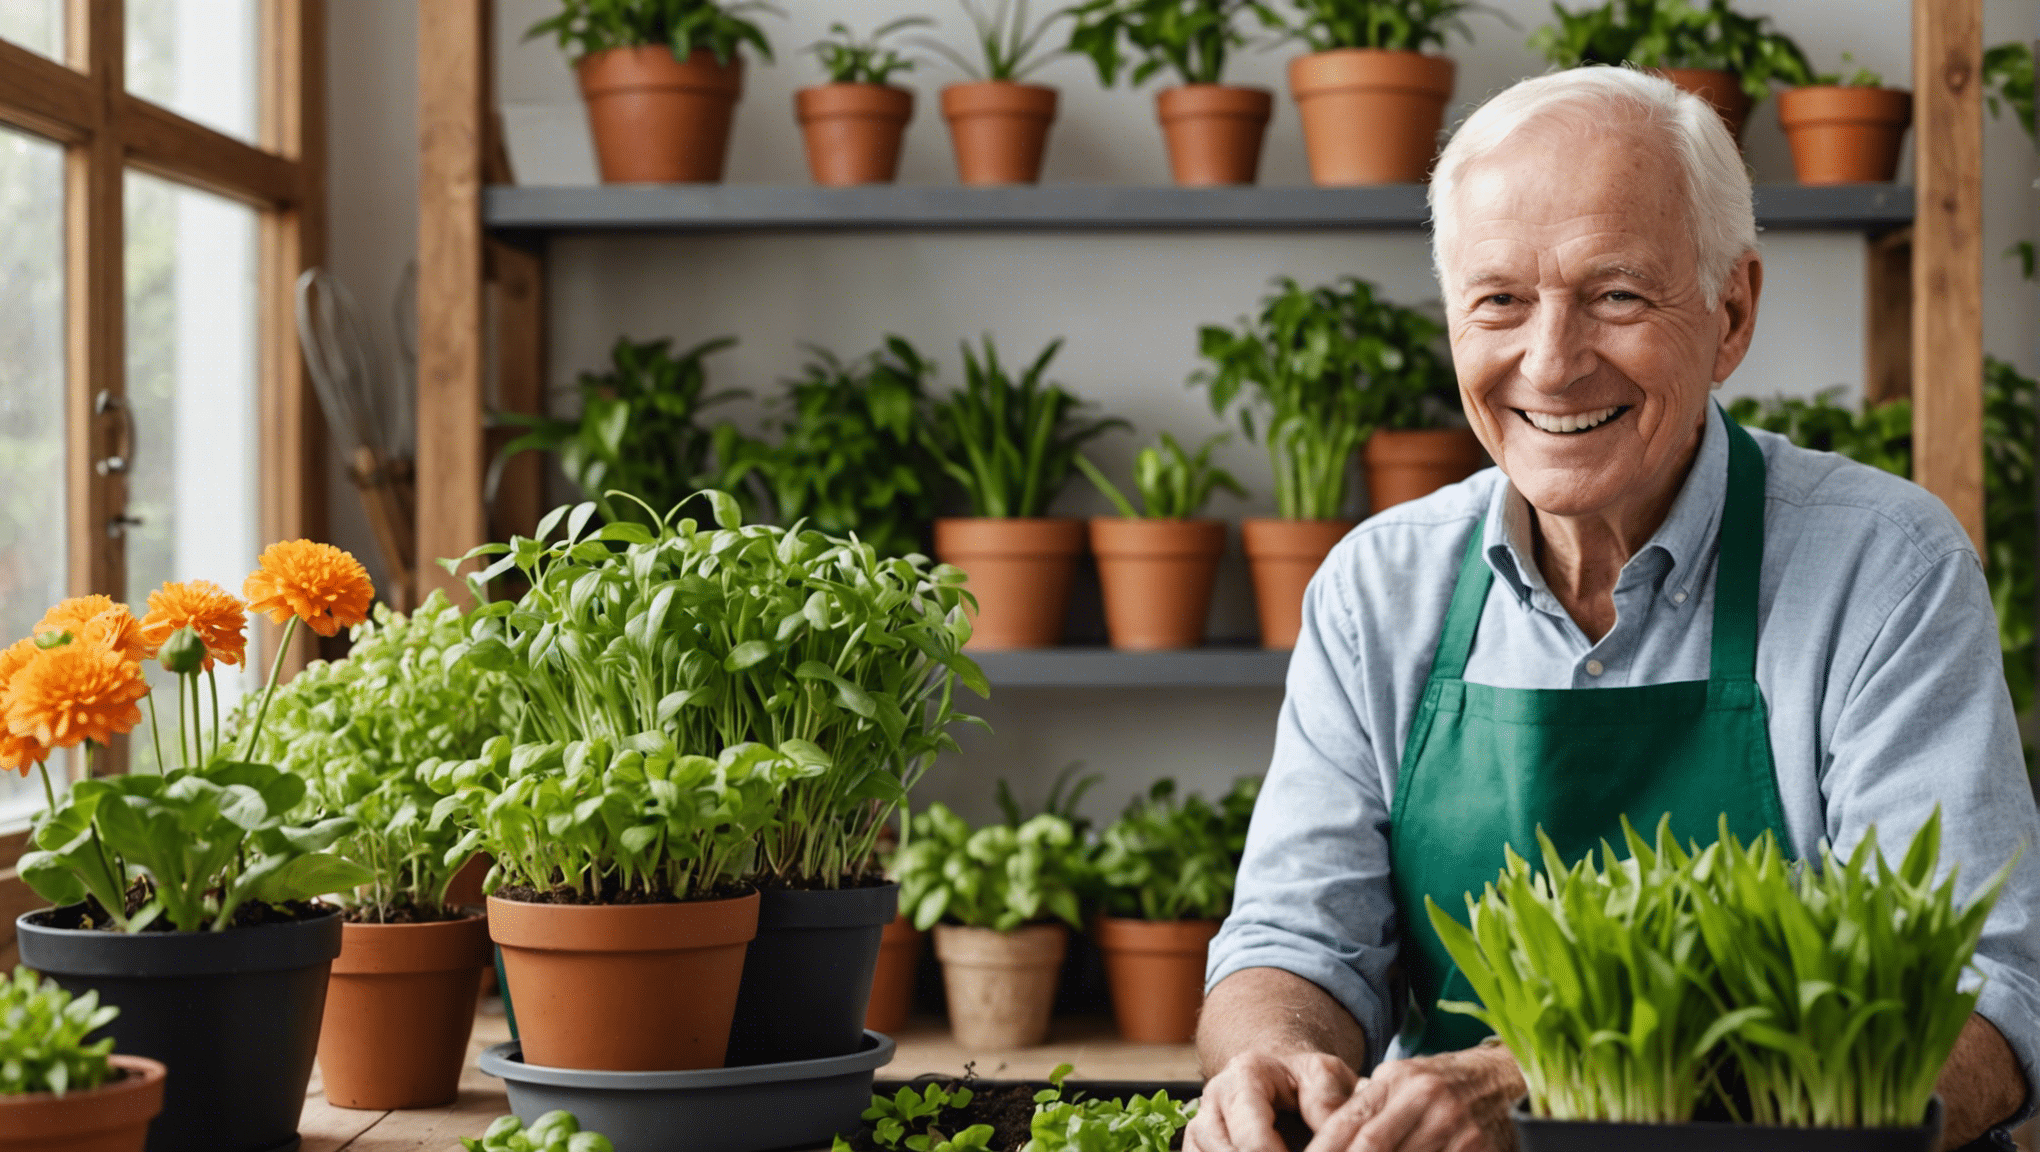 opdag fordelene ved indendørs havearbejde for seniorer, og hvordan det kan forbedre deres generelle velvære og livskvalitet.